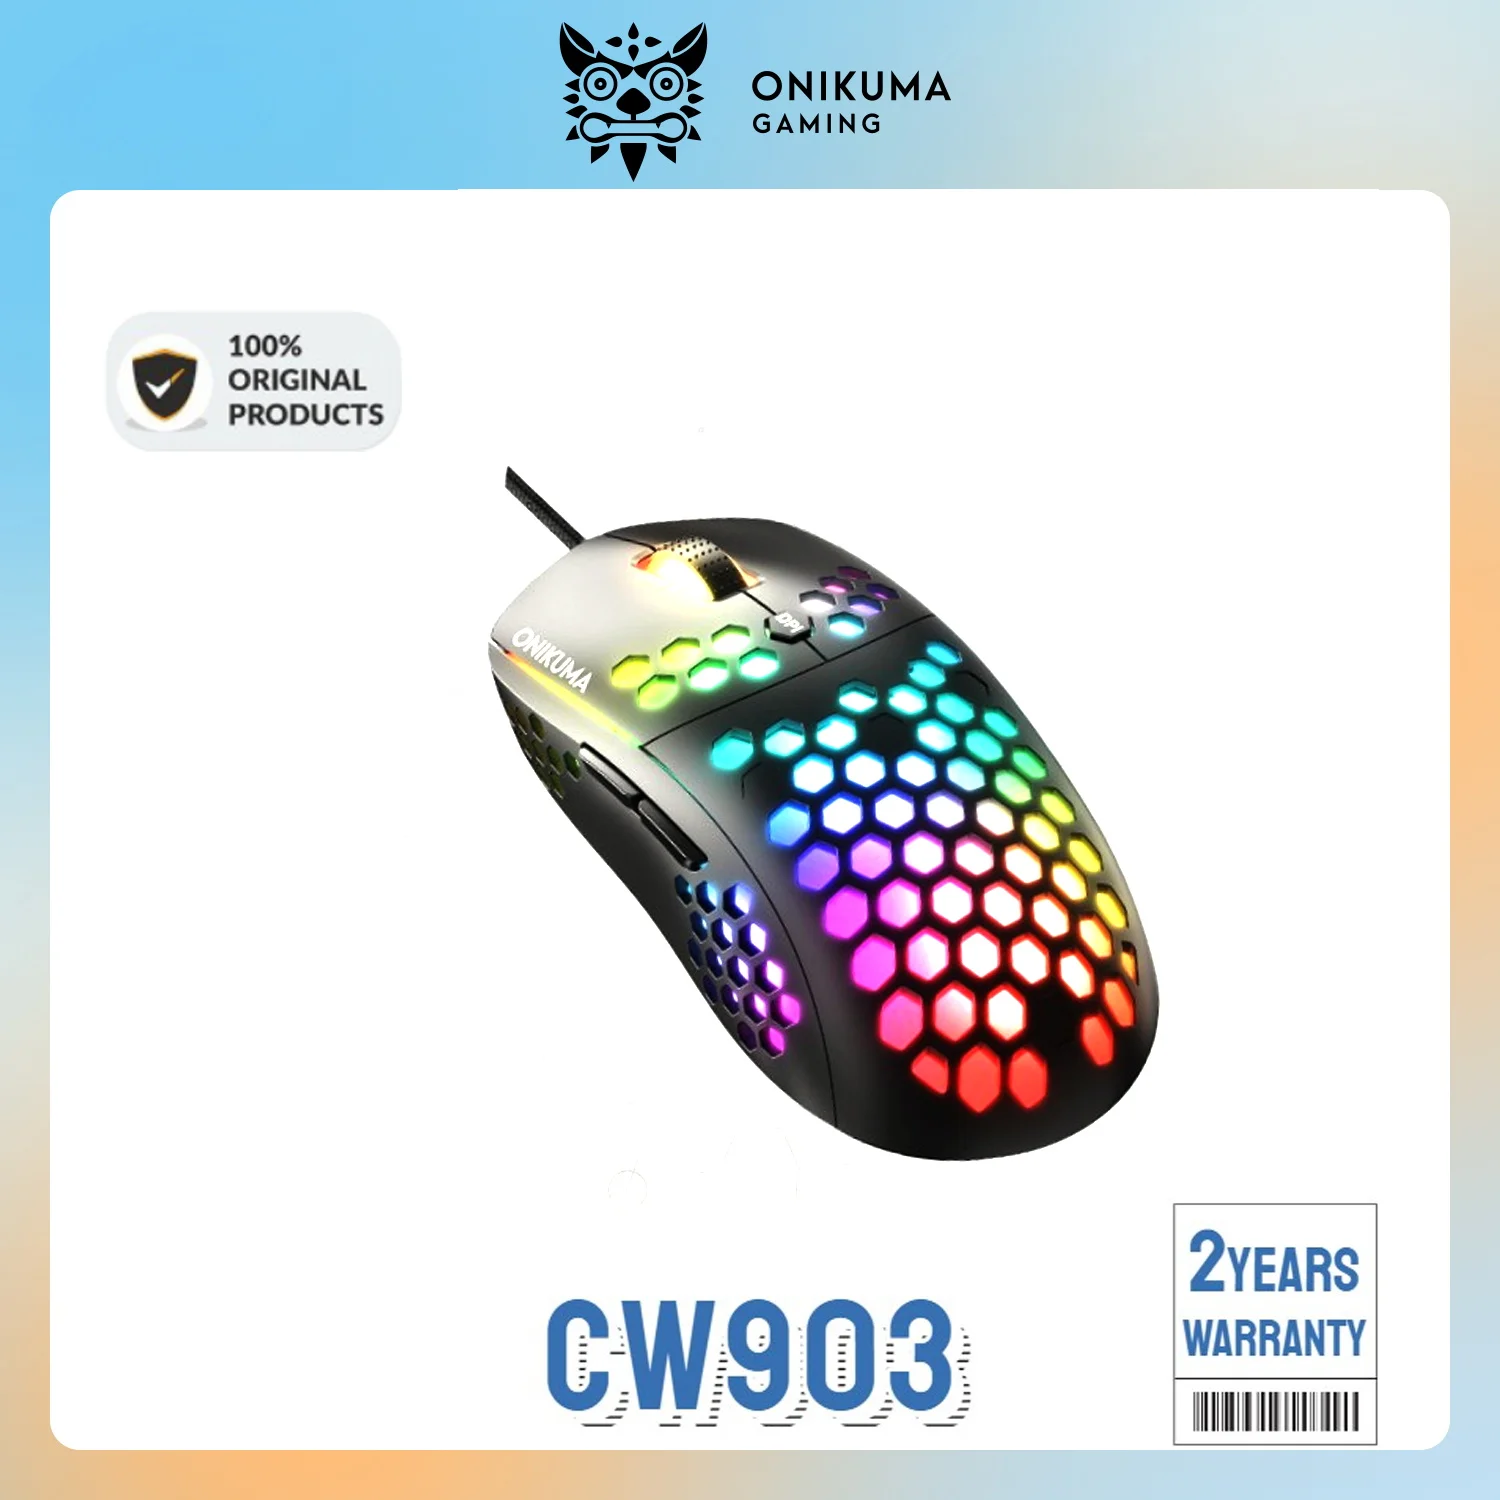 

Проводная игровая мышь Onikuma CW903, оптическая USB мышь для киберспорта, игровая мышь с 6 светодиодный подсветильник Ками RGB для ноутбука, ПК, игр